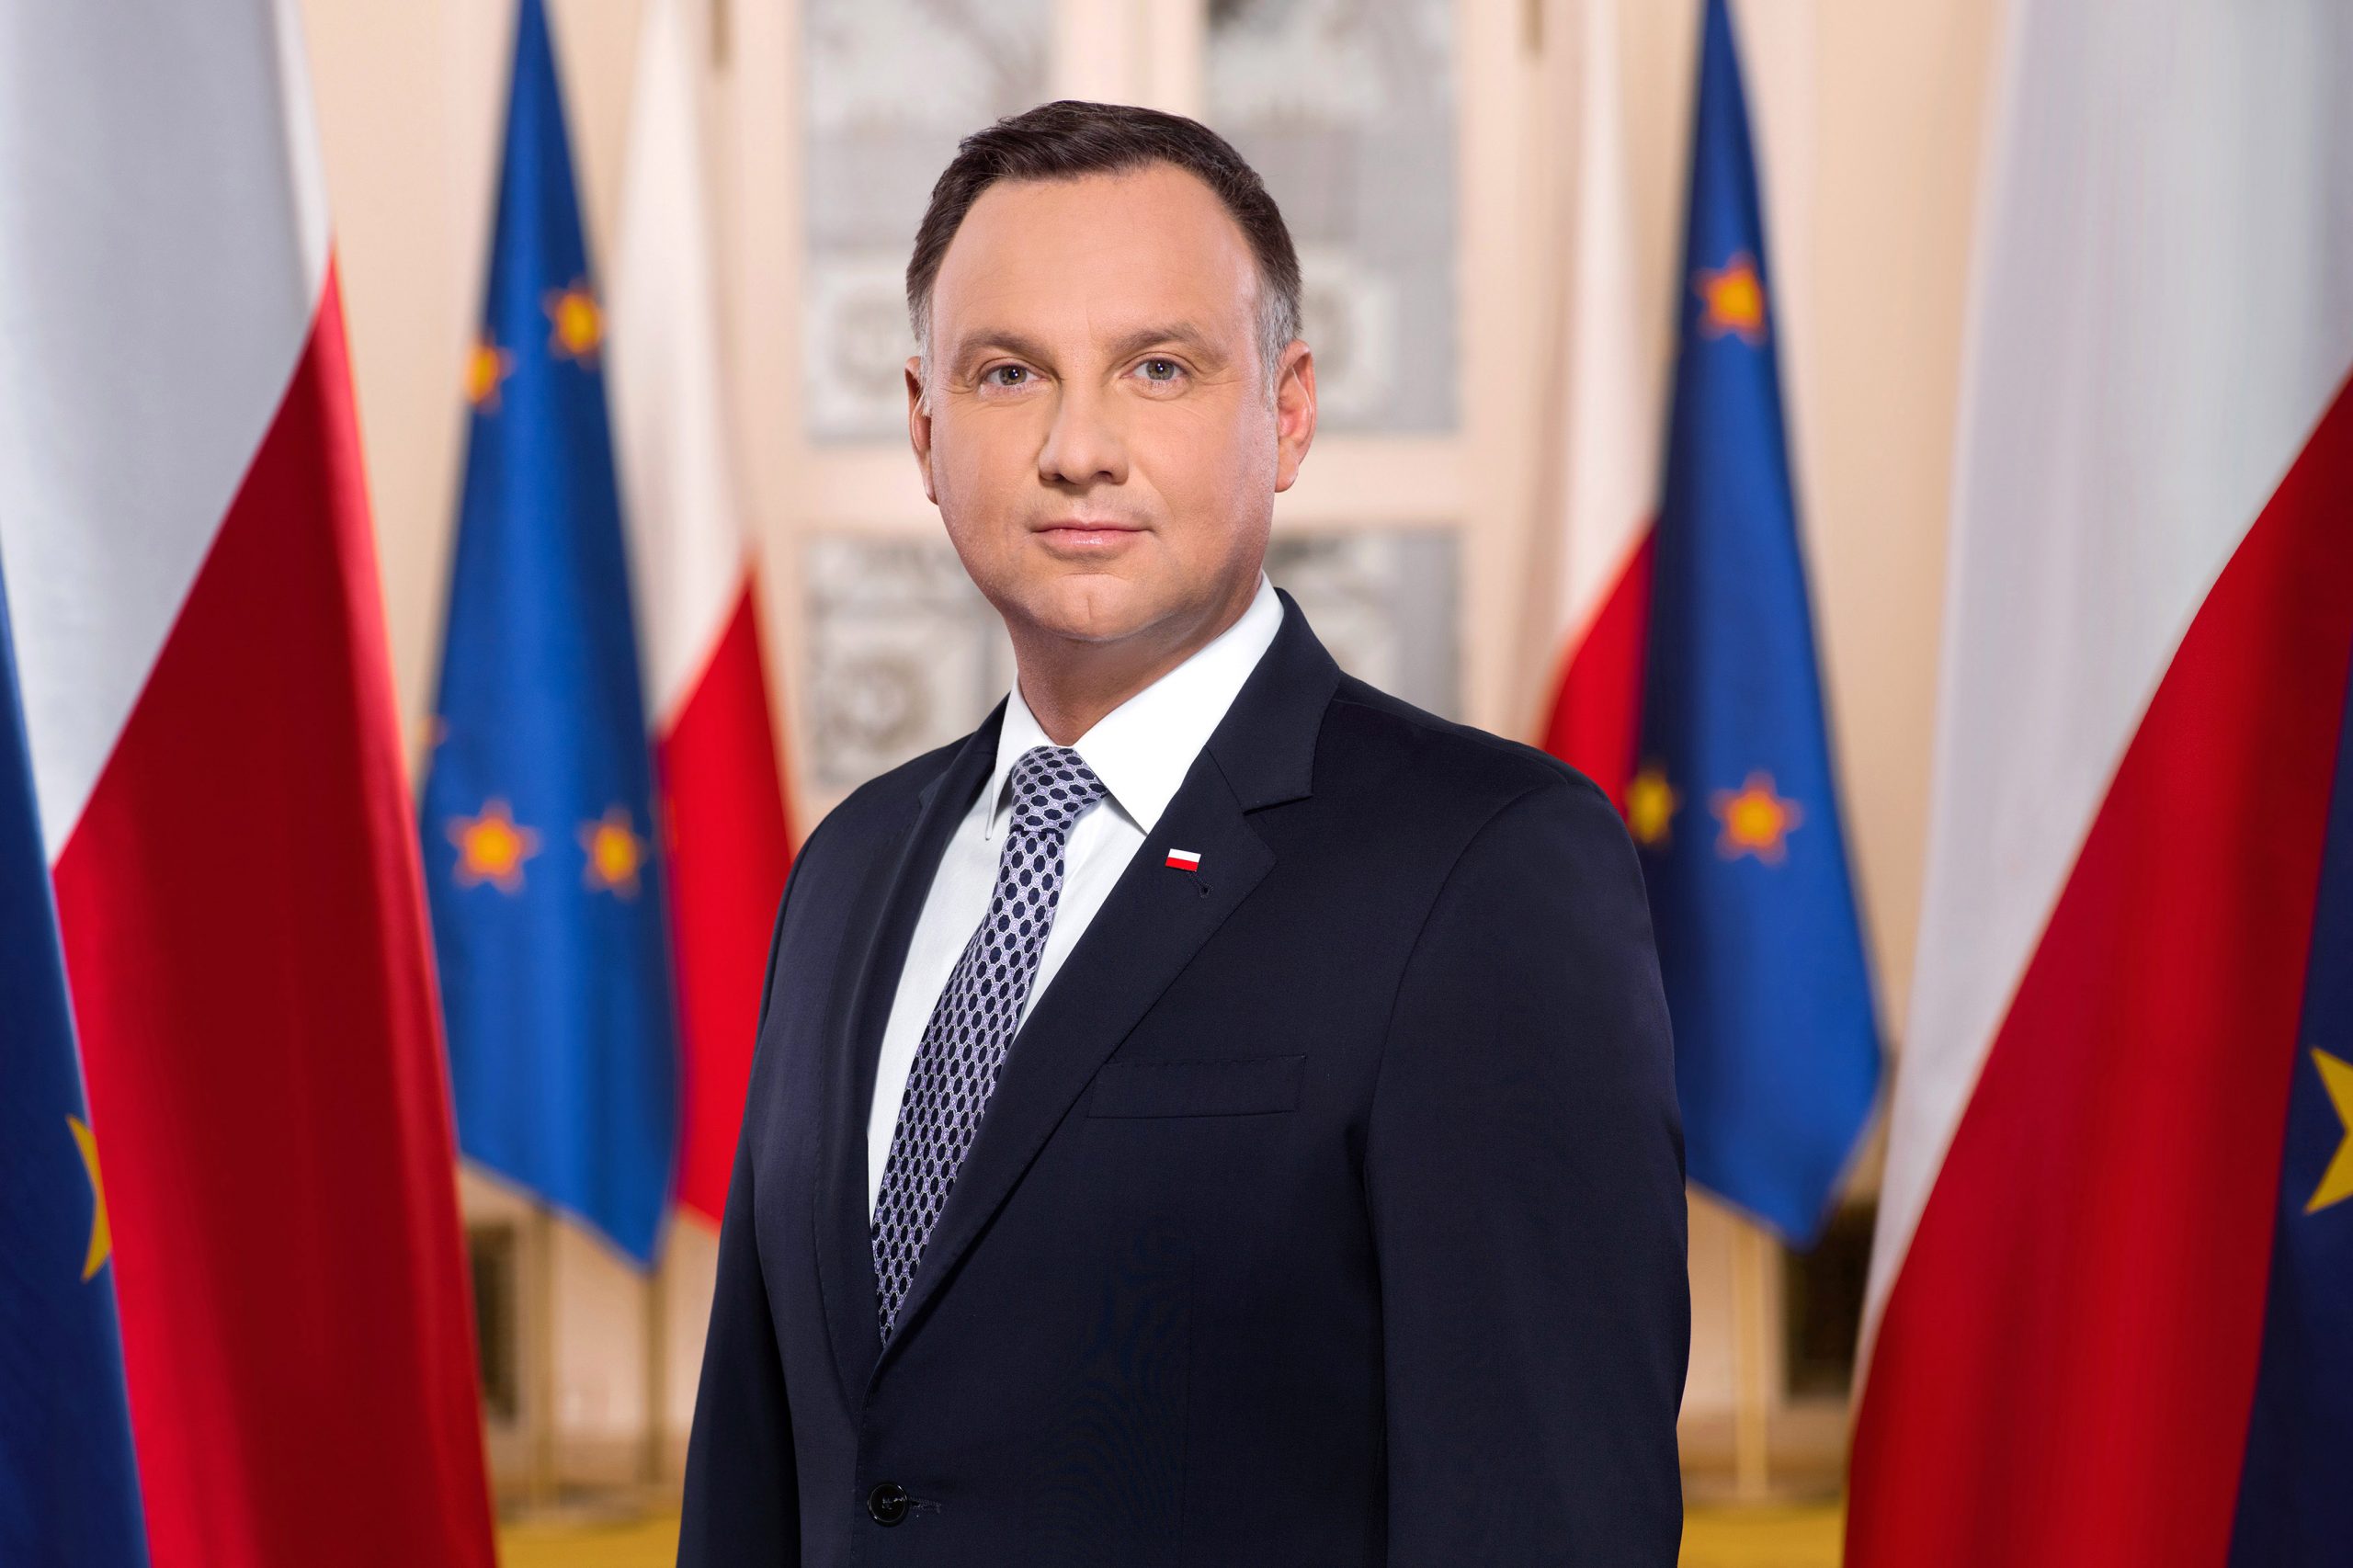 Bilde av President Duda foran en rekke med polske og EU-flagg